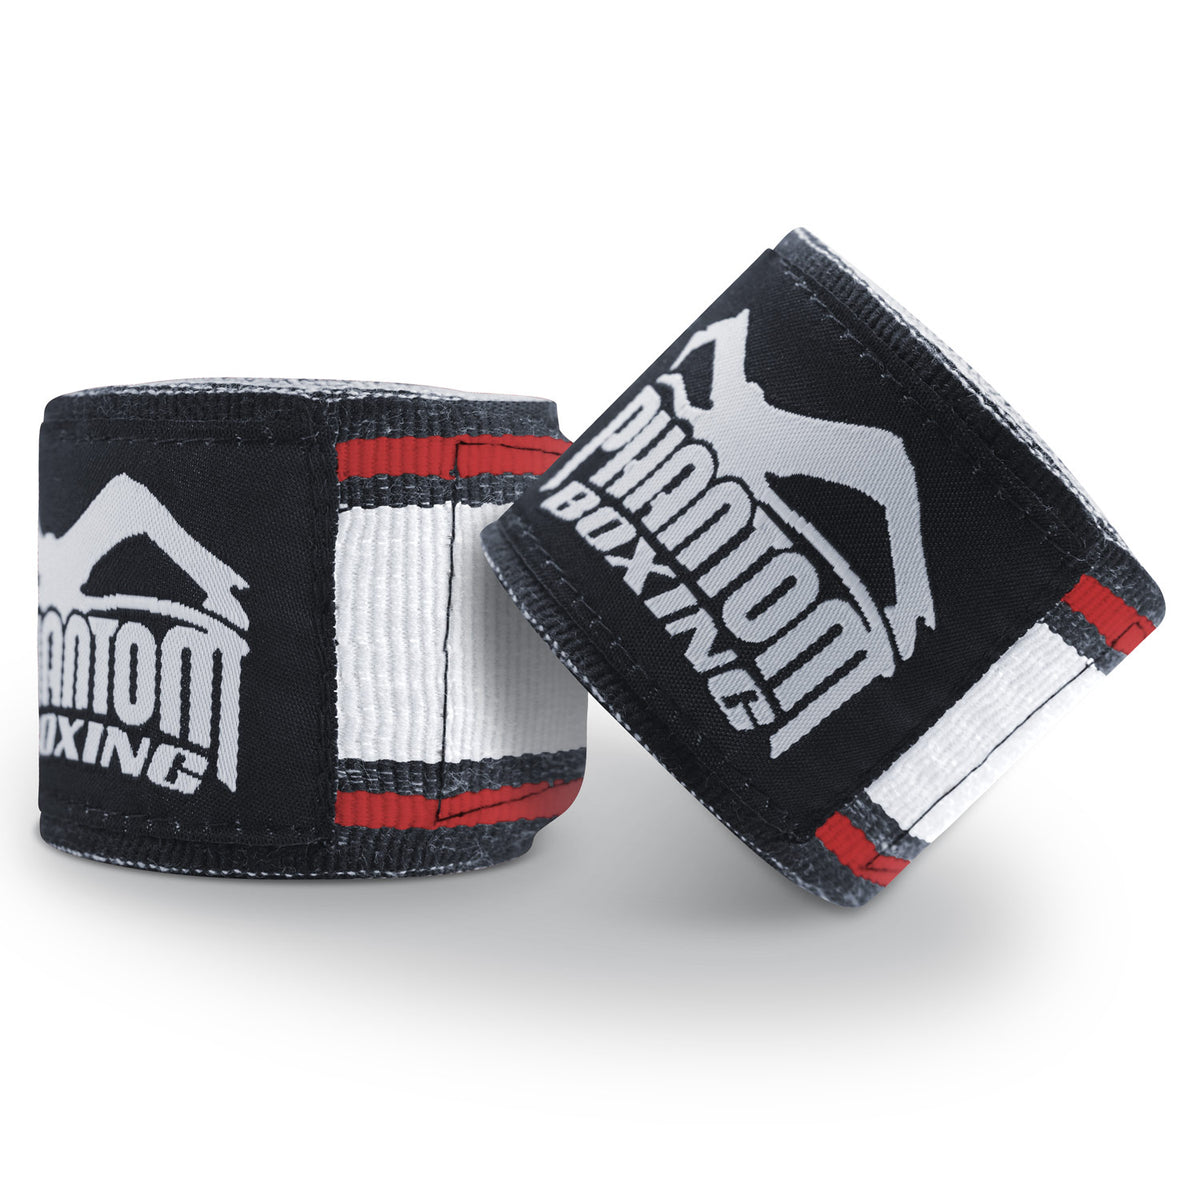 Phantom Boxbandagen für dein Kampfsporttraining.  Ideal für MMA, Muay Thai und Kickboxen. 450cm in den Farben Schwarz/Weiss/Rot.